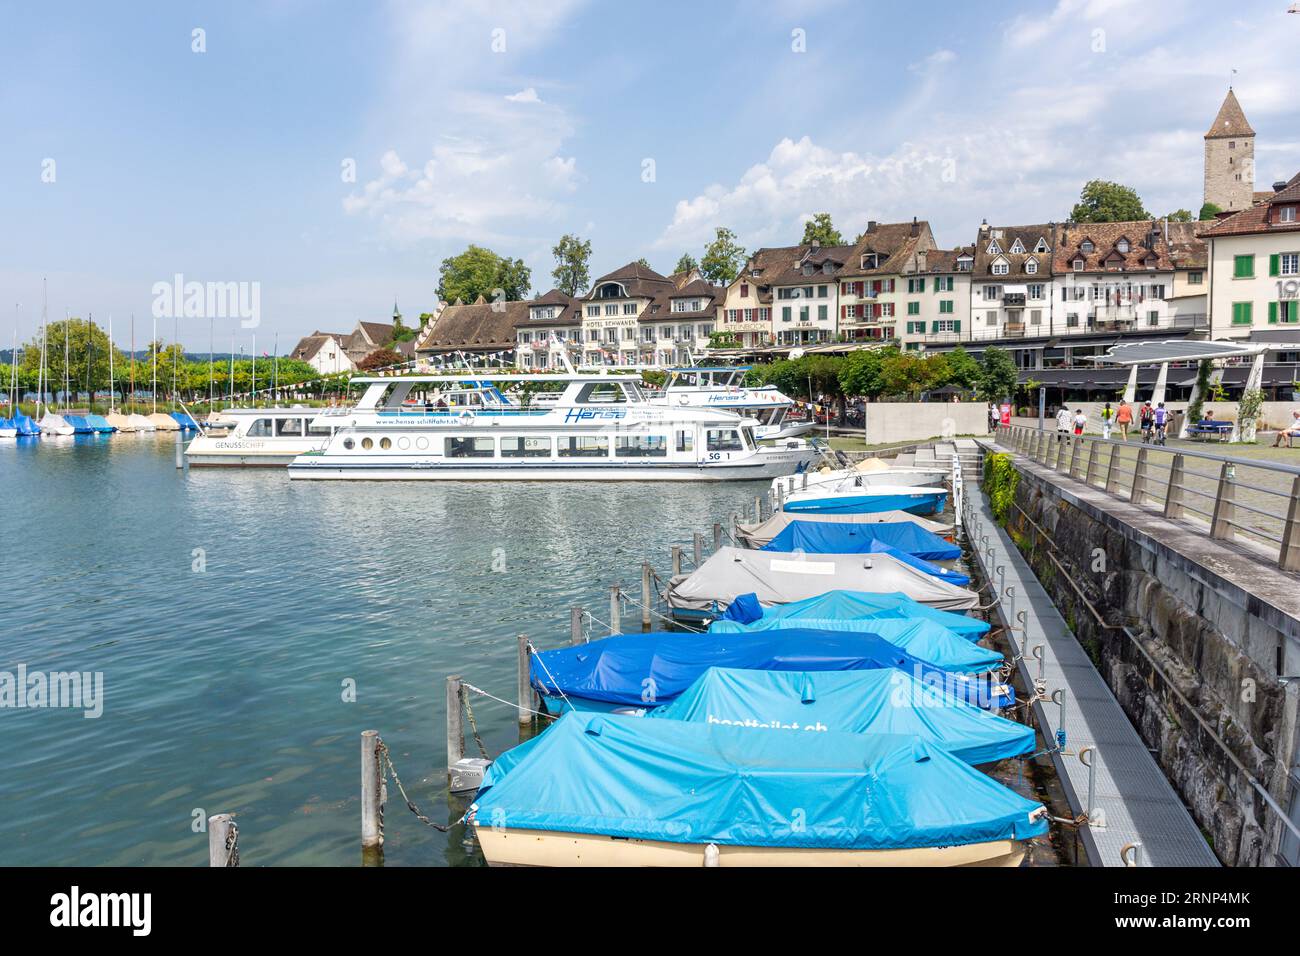 Bateaux de croisière à passagers amarrés dans le port, Rapperswil-Jona, Canton de St. Gallen, Suisse Banque D'Images